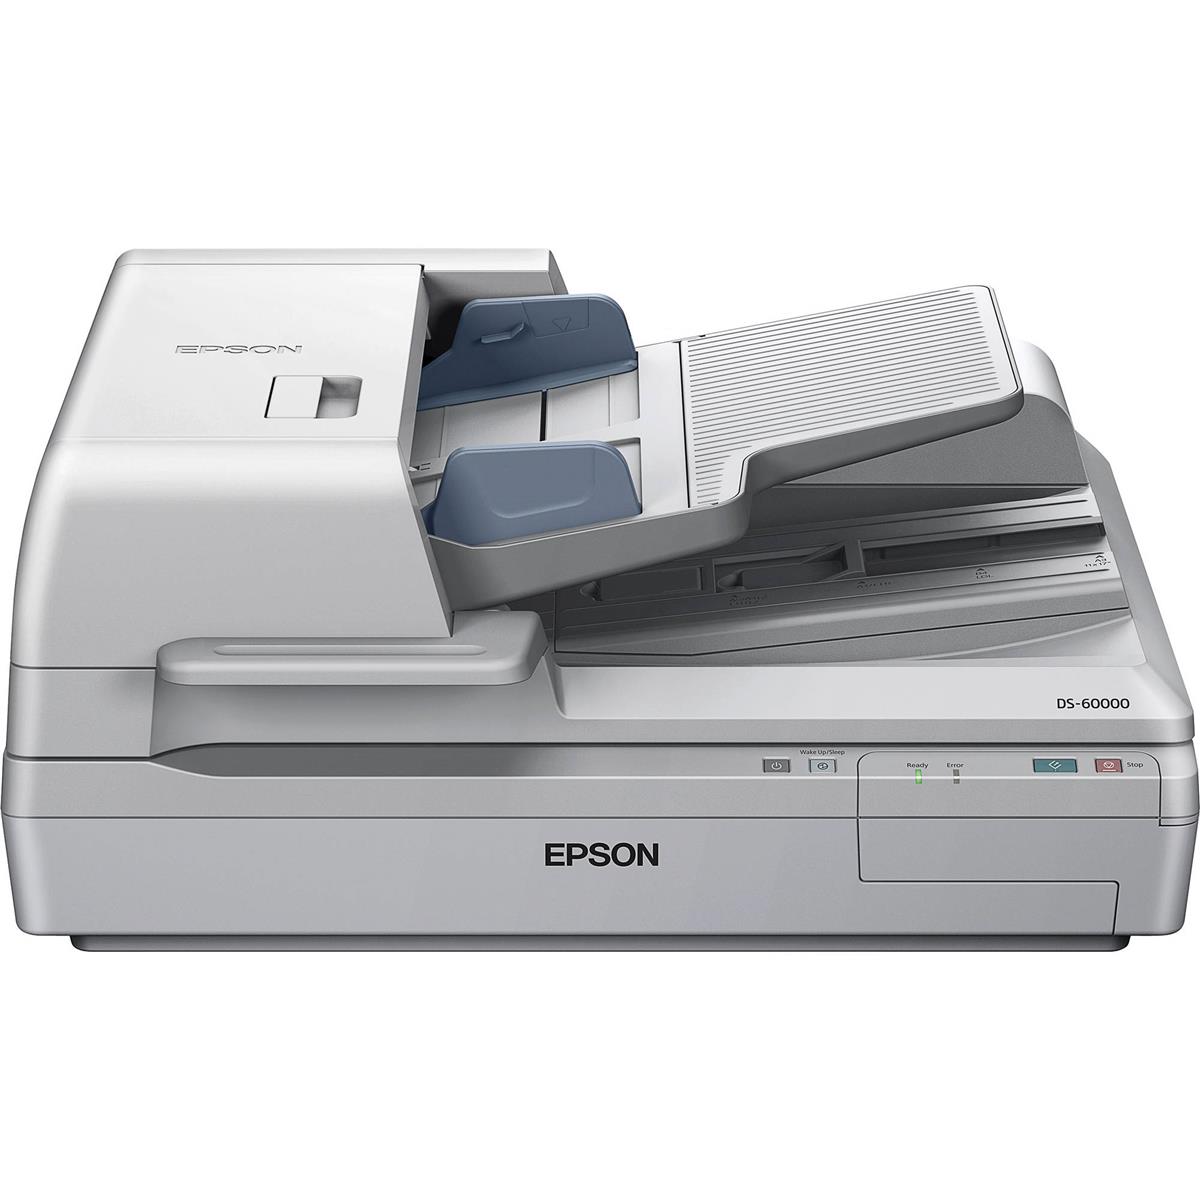 

Epson Workforce DS-60000 Document Scanner